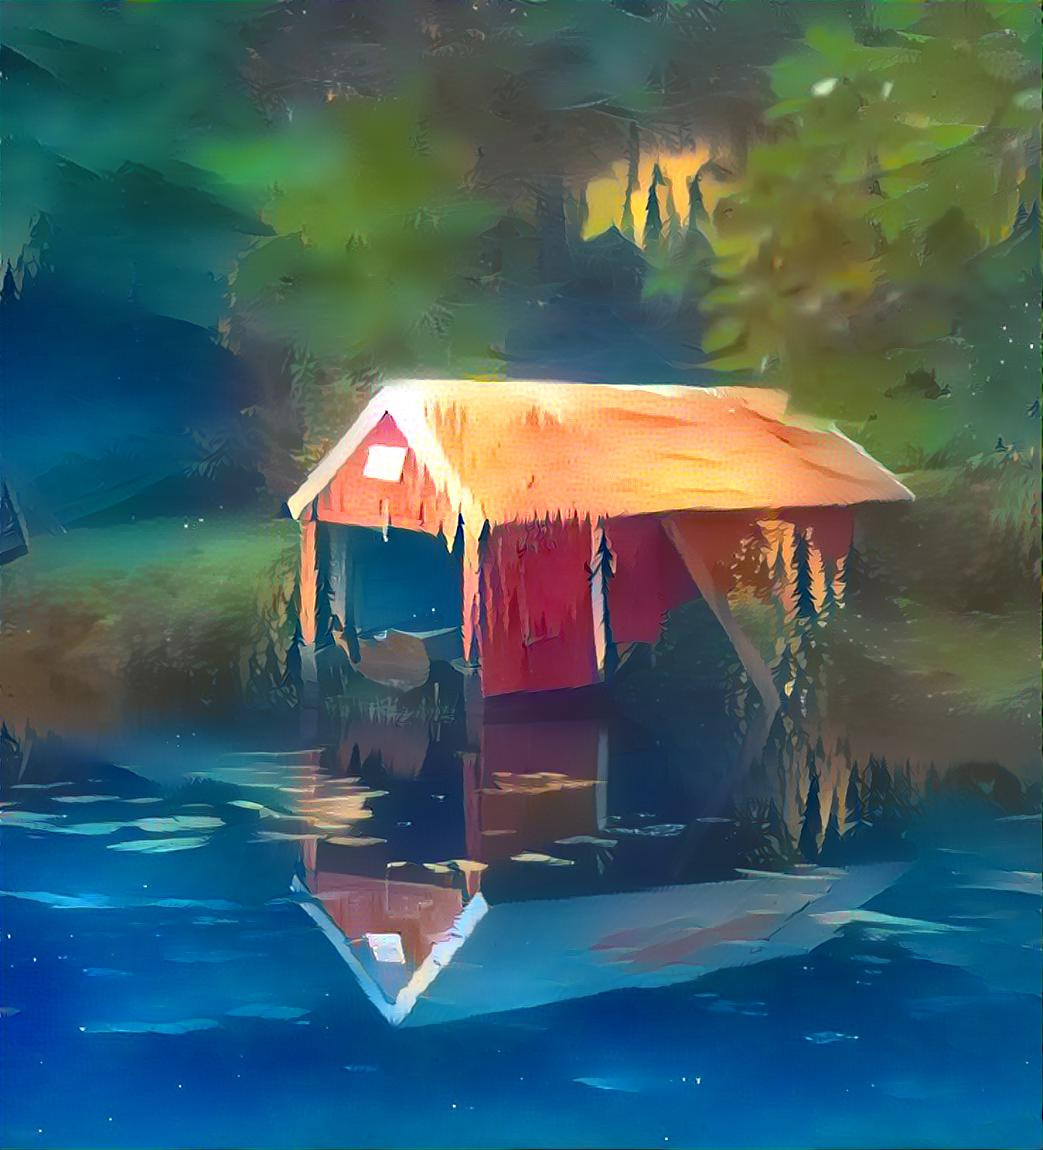 Boathouse on the lake 2